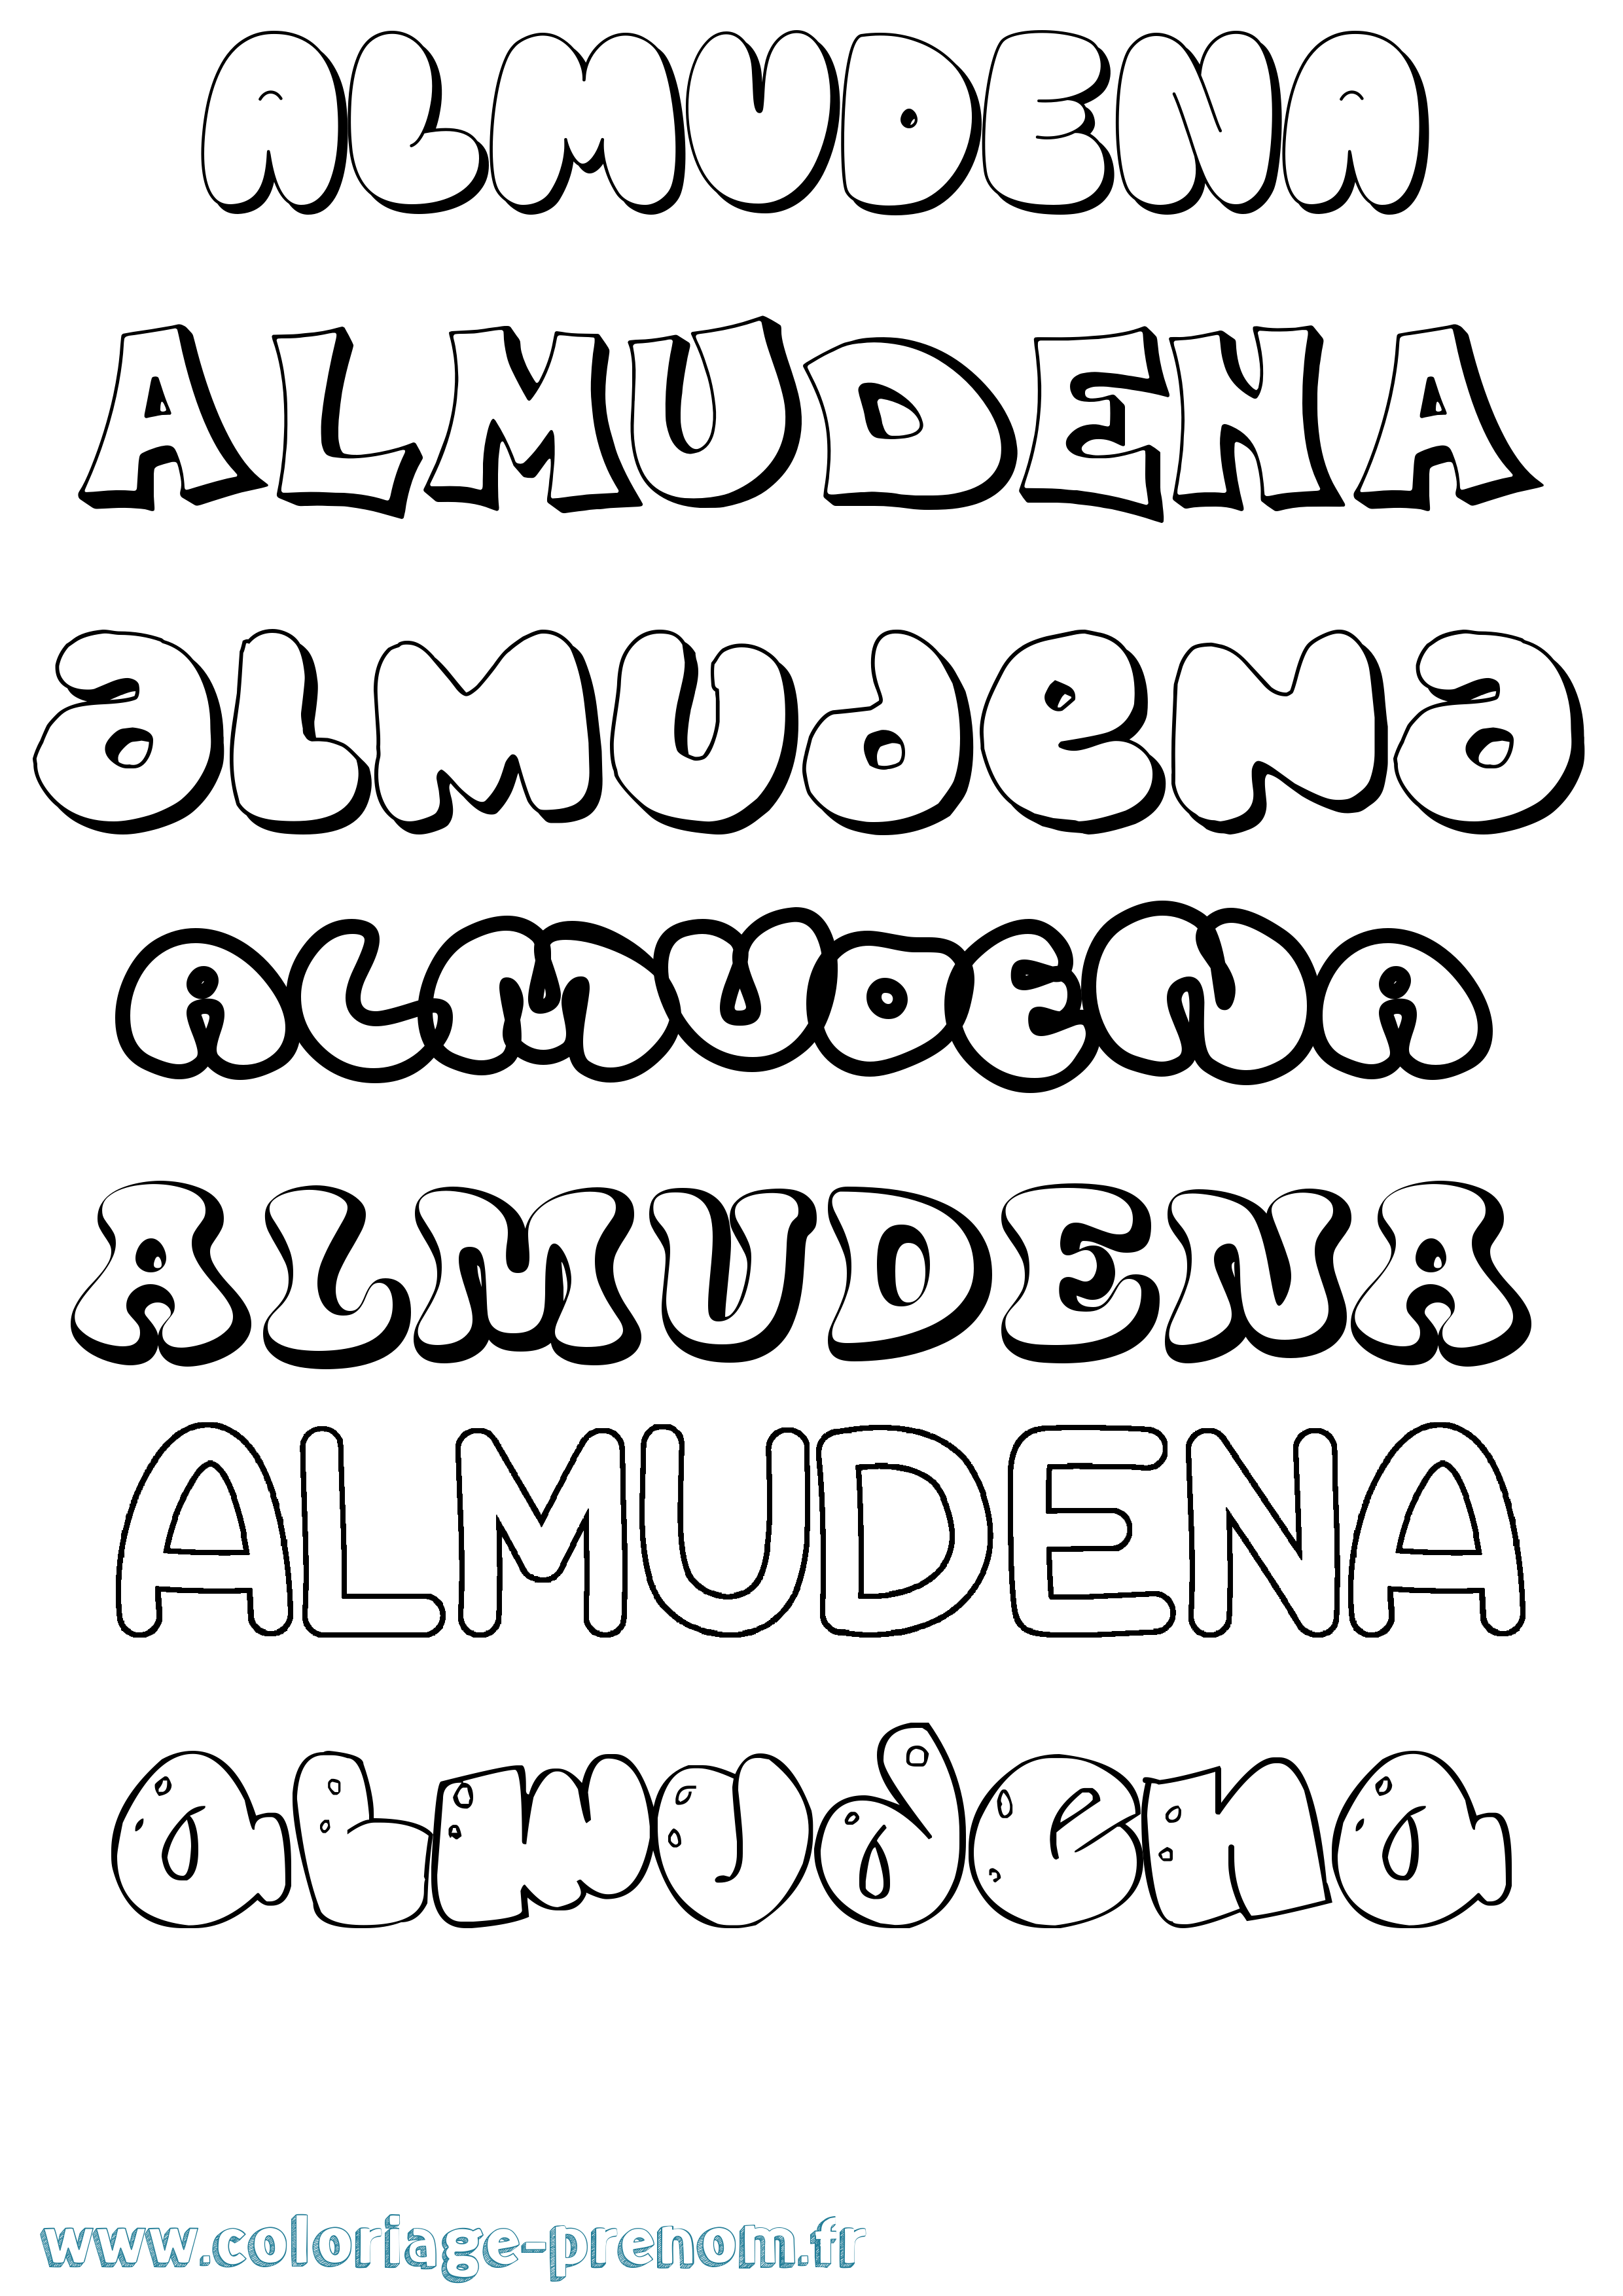 Coloriage prénom Almudena Bubble